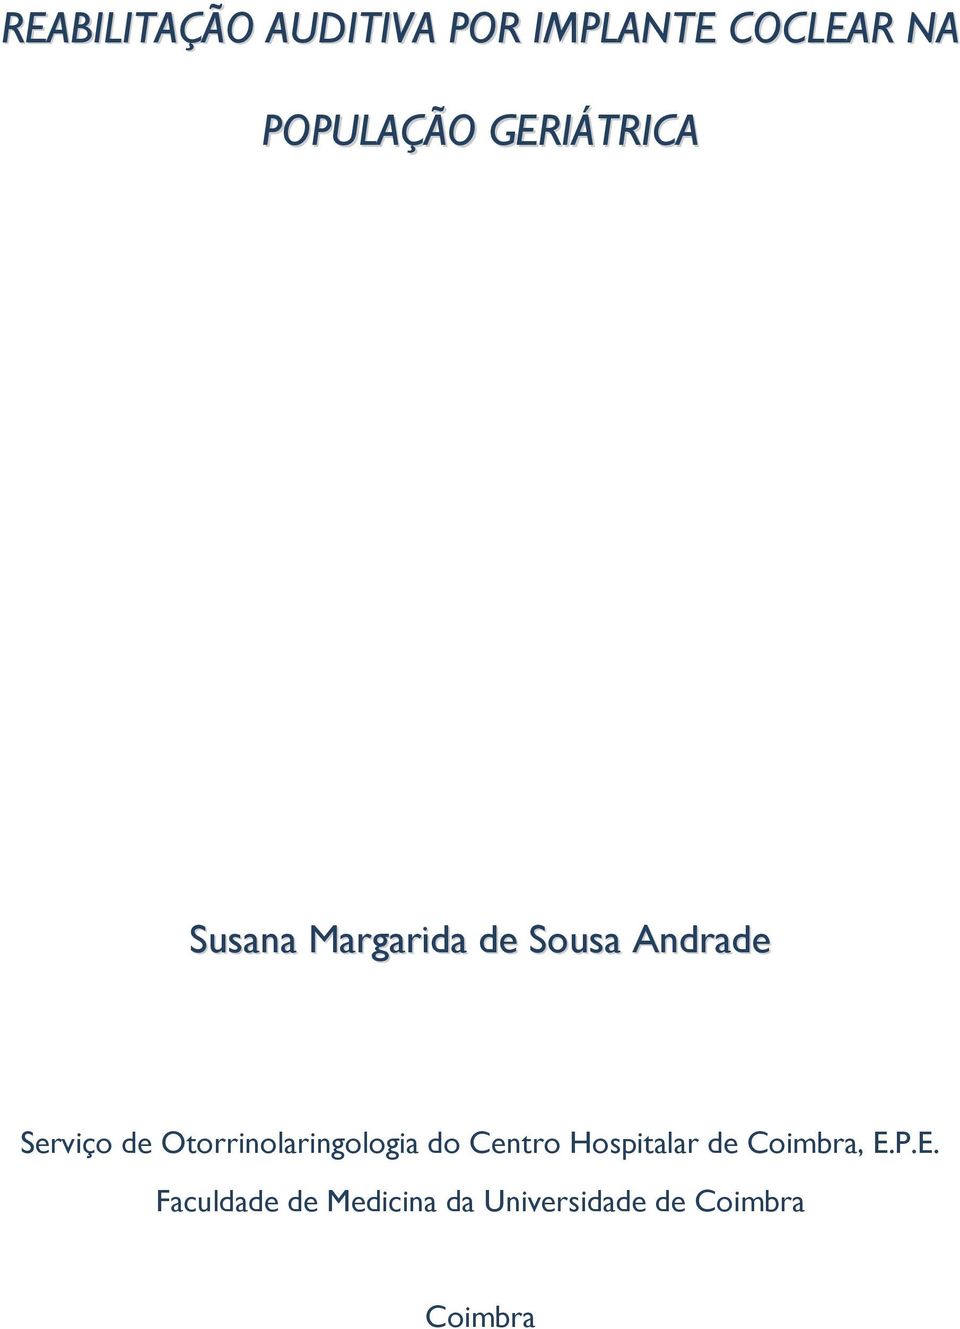 Otorrinolaringologia do Centro Hospitalar de Coimbra, E.P.